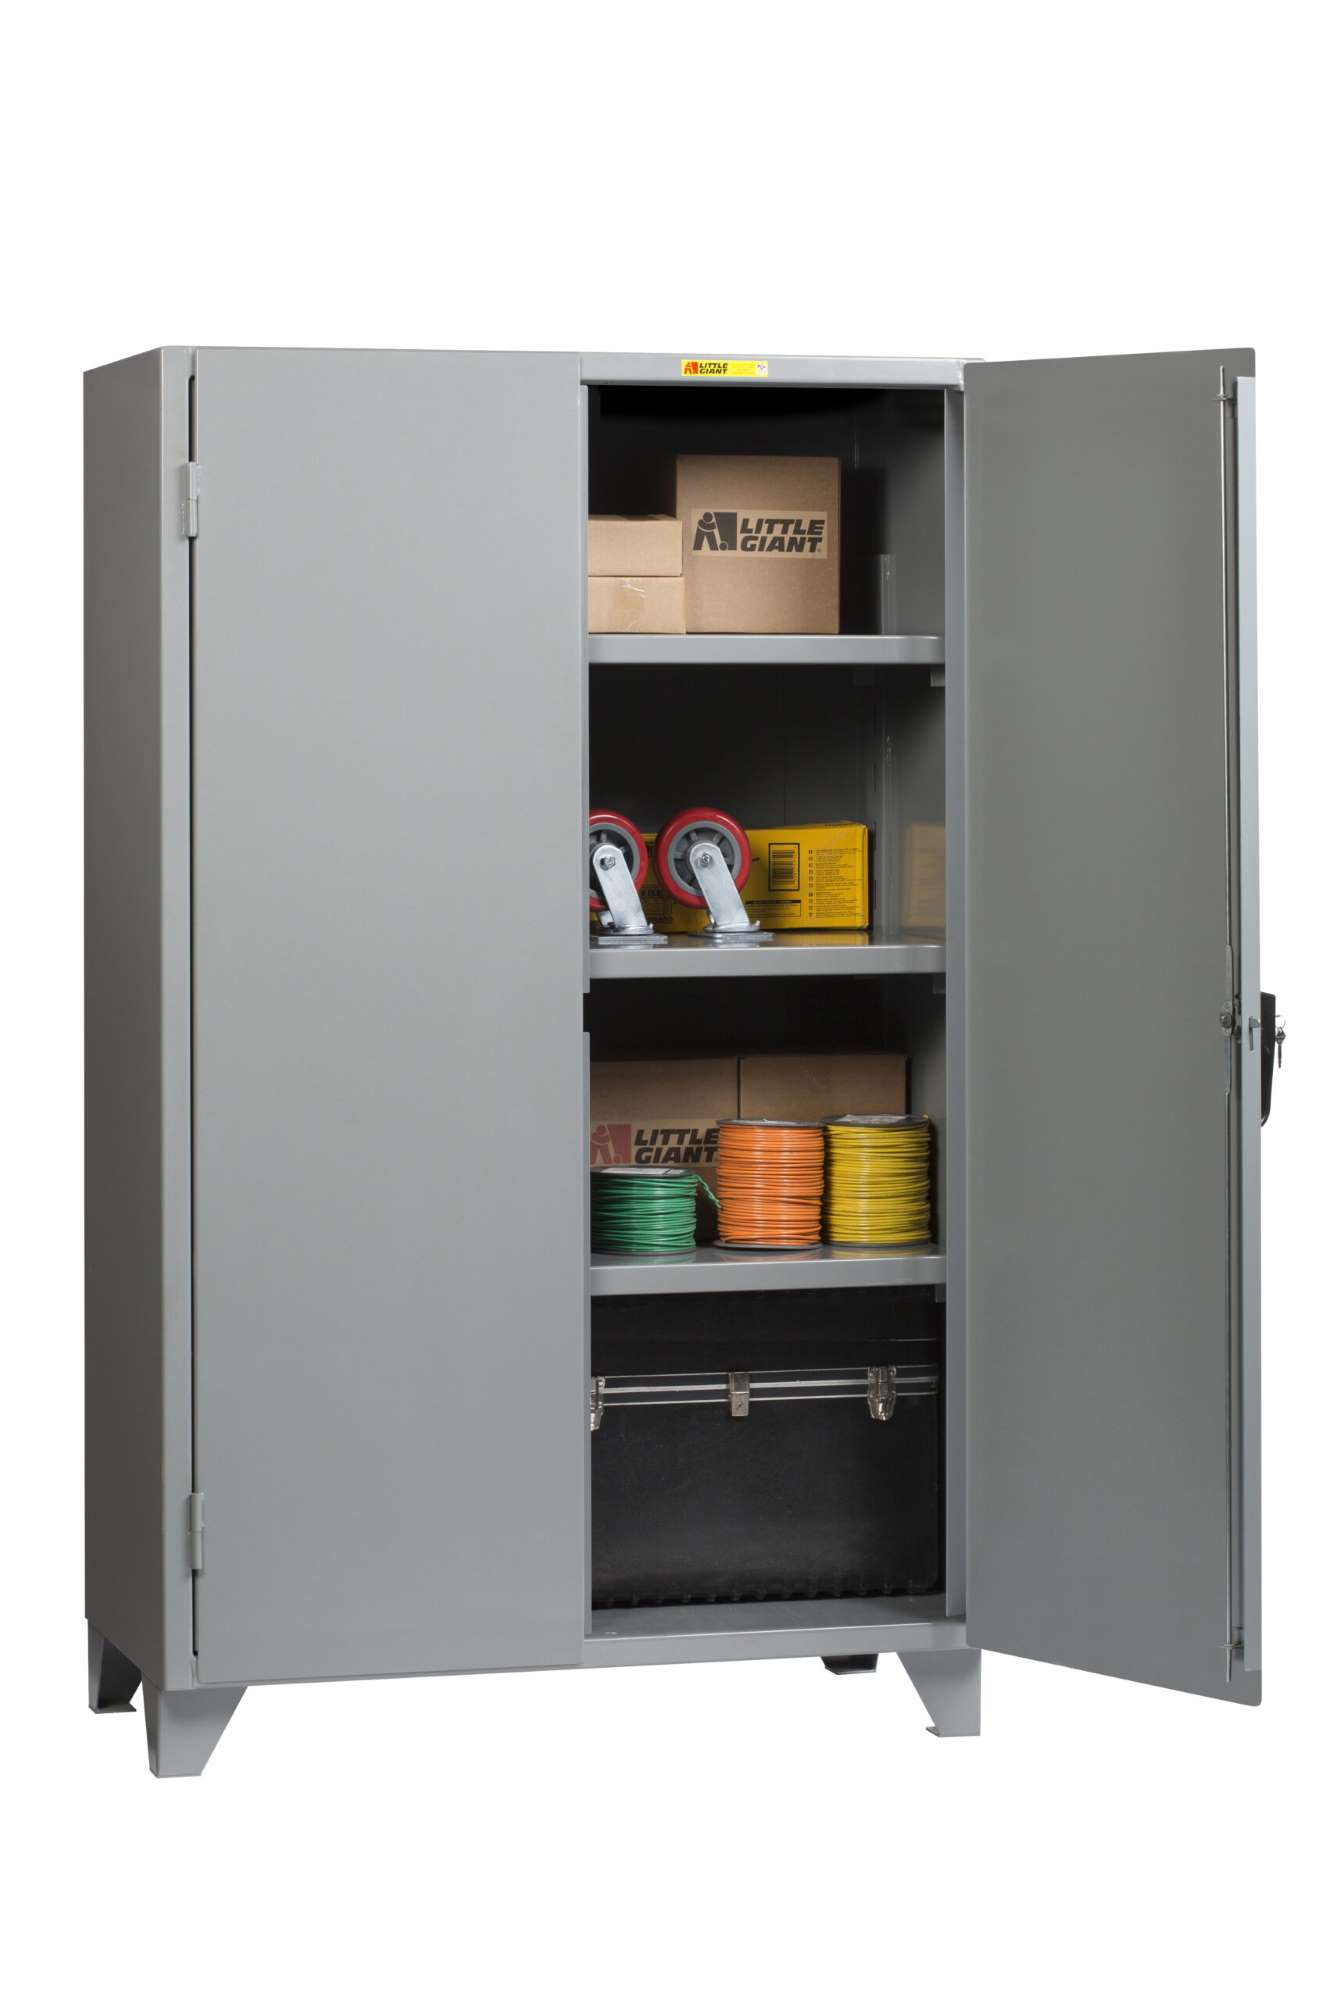 Little Giant steel storage cabinet, Lockable doors, Adjustable shelves, 78" overall height